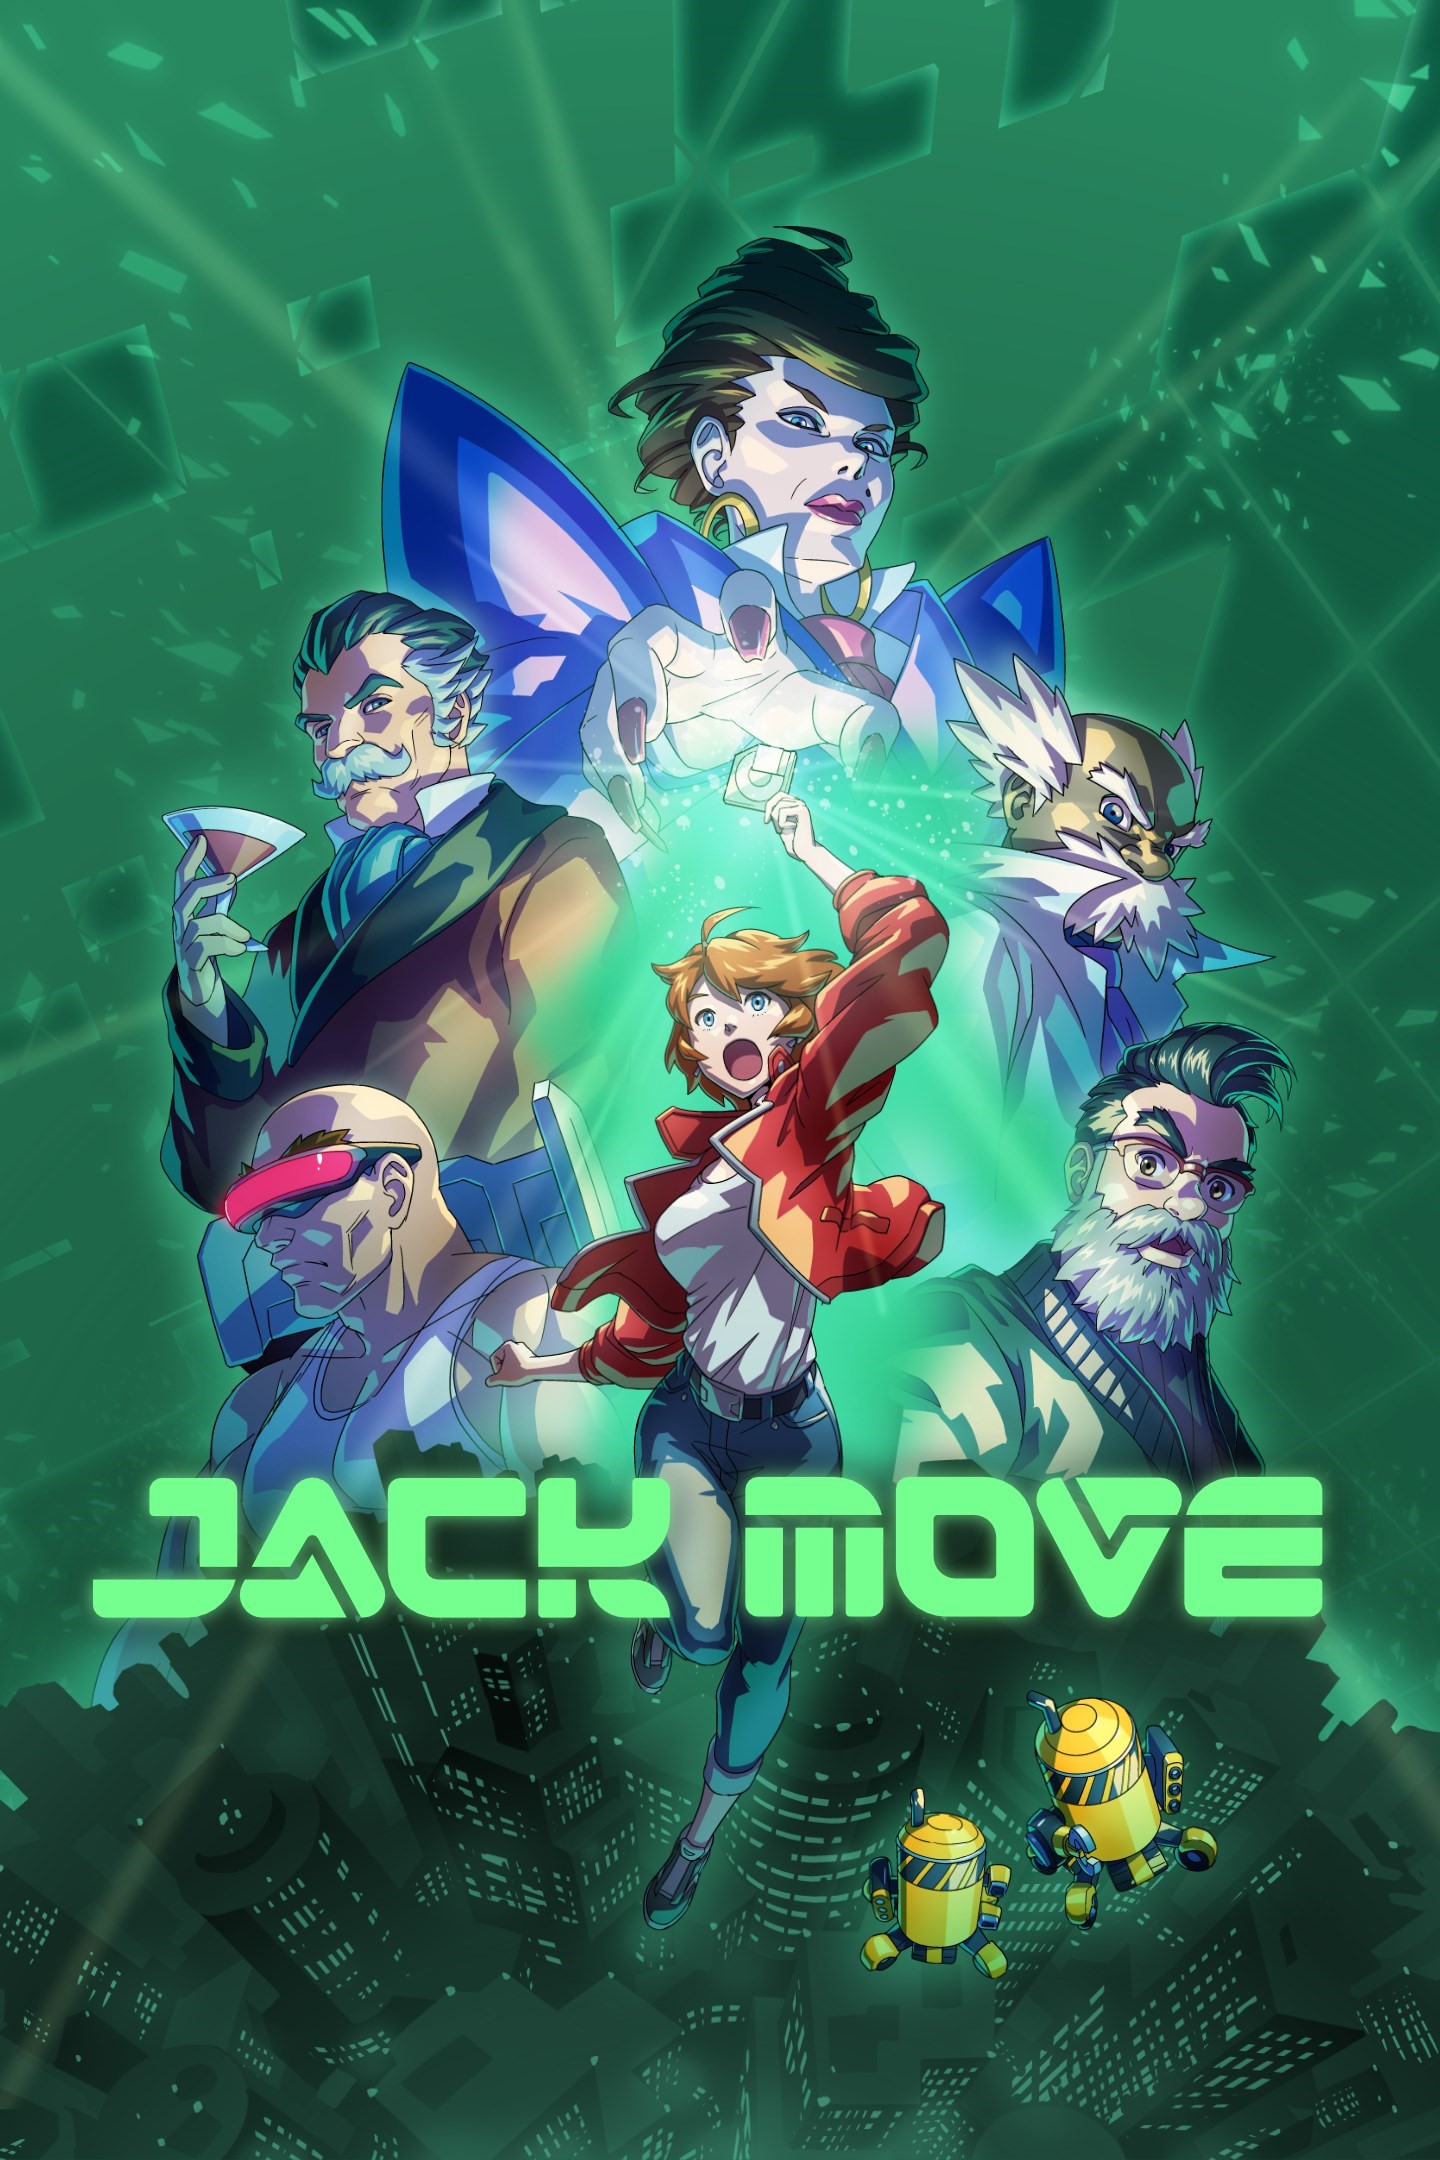 Jack Move/Xbox